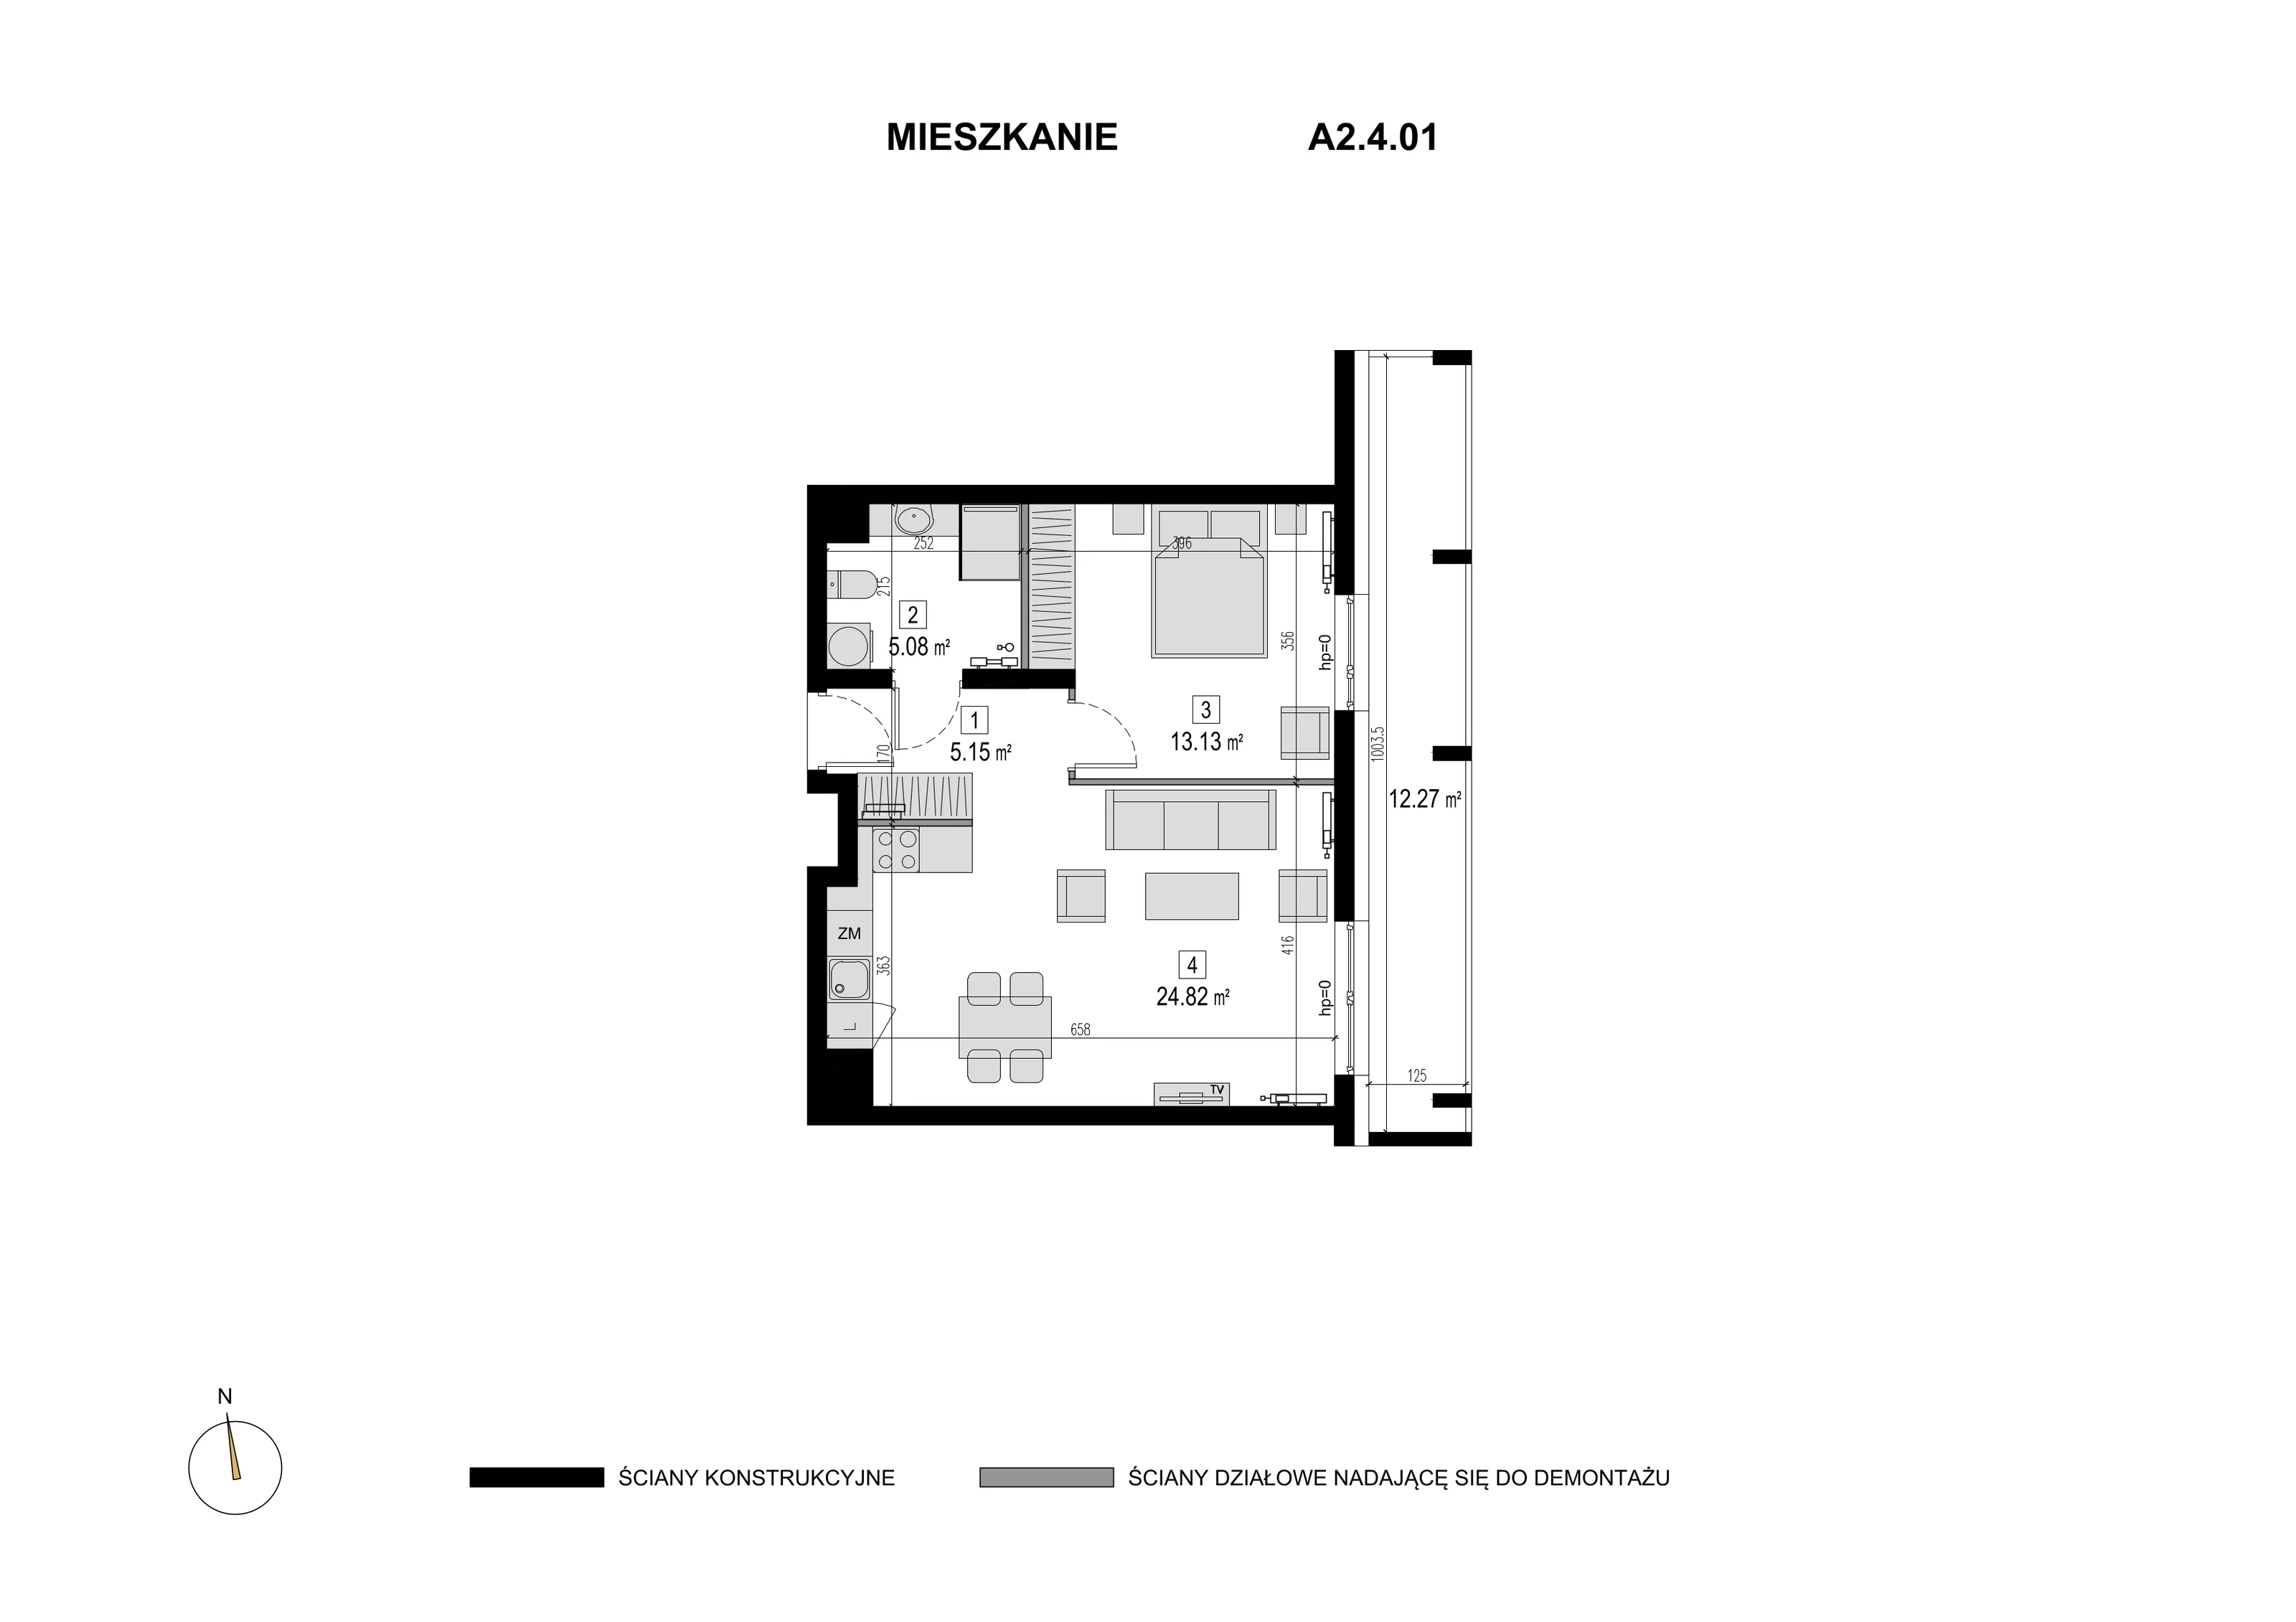 Mieszkanie 48,18 m², piętro 3, oferta nr A2.4.01, Novaforma, Legnica, ul. Chojnowska